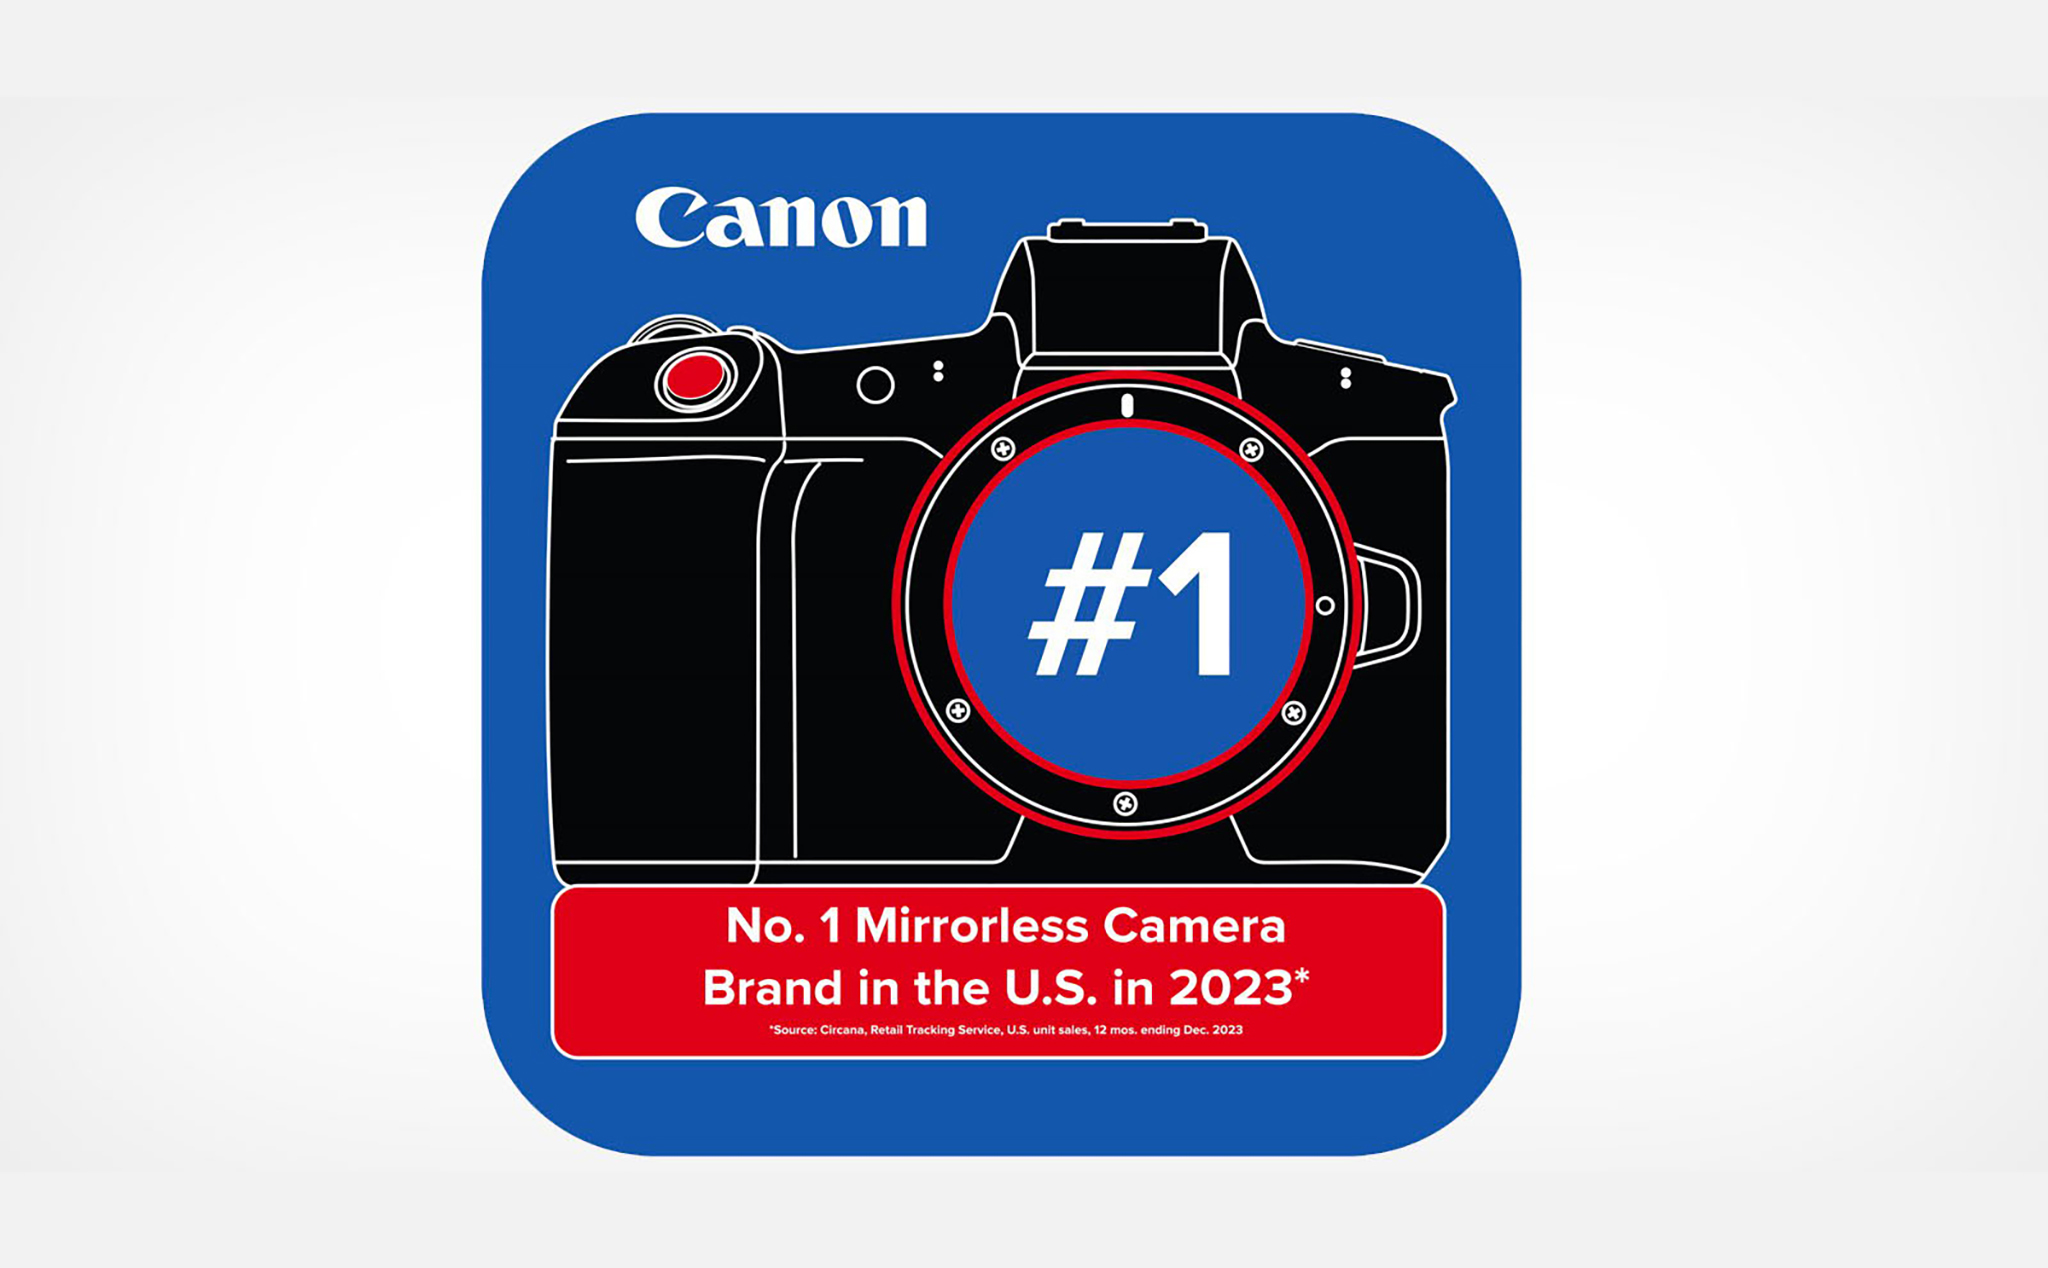 Canon tuyên bố họ là hãng máy ảnh mirrorless số 1 tại Mỹ năm thứ 3 liên tiếp